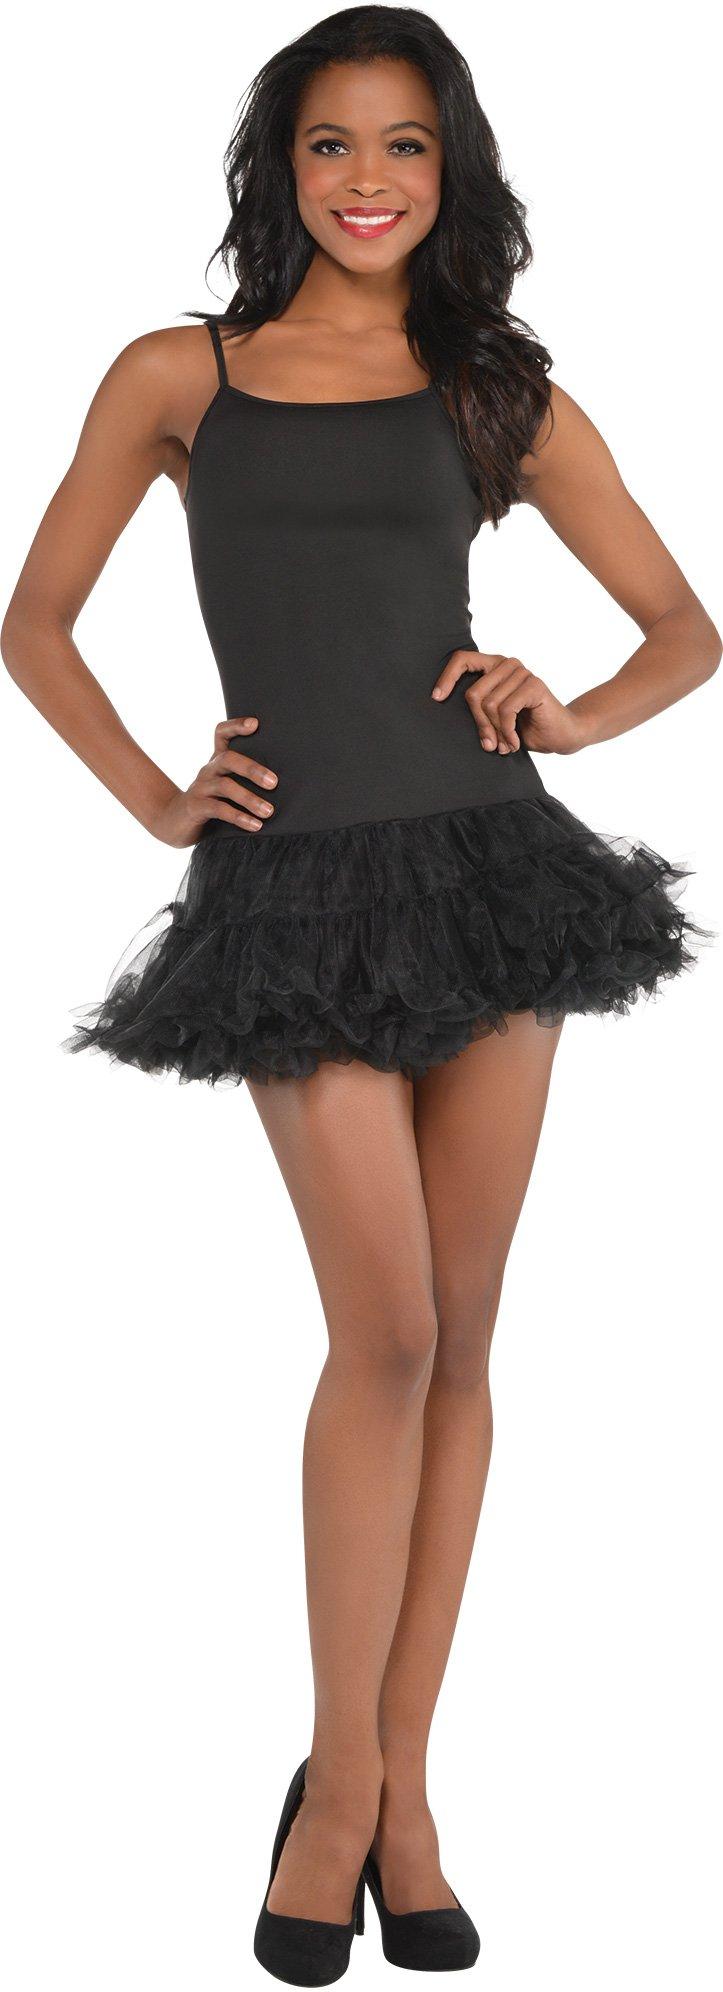 Mini Tulle Skirt Black Skirt Short Skirt Tulle Net Tutu Petticoat